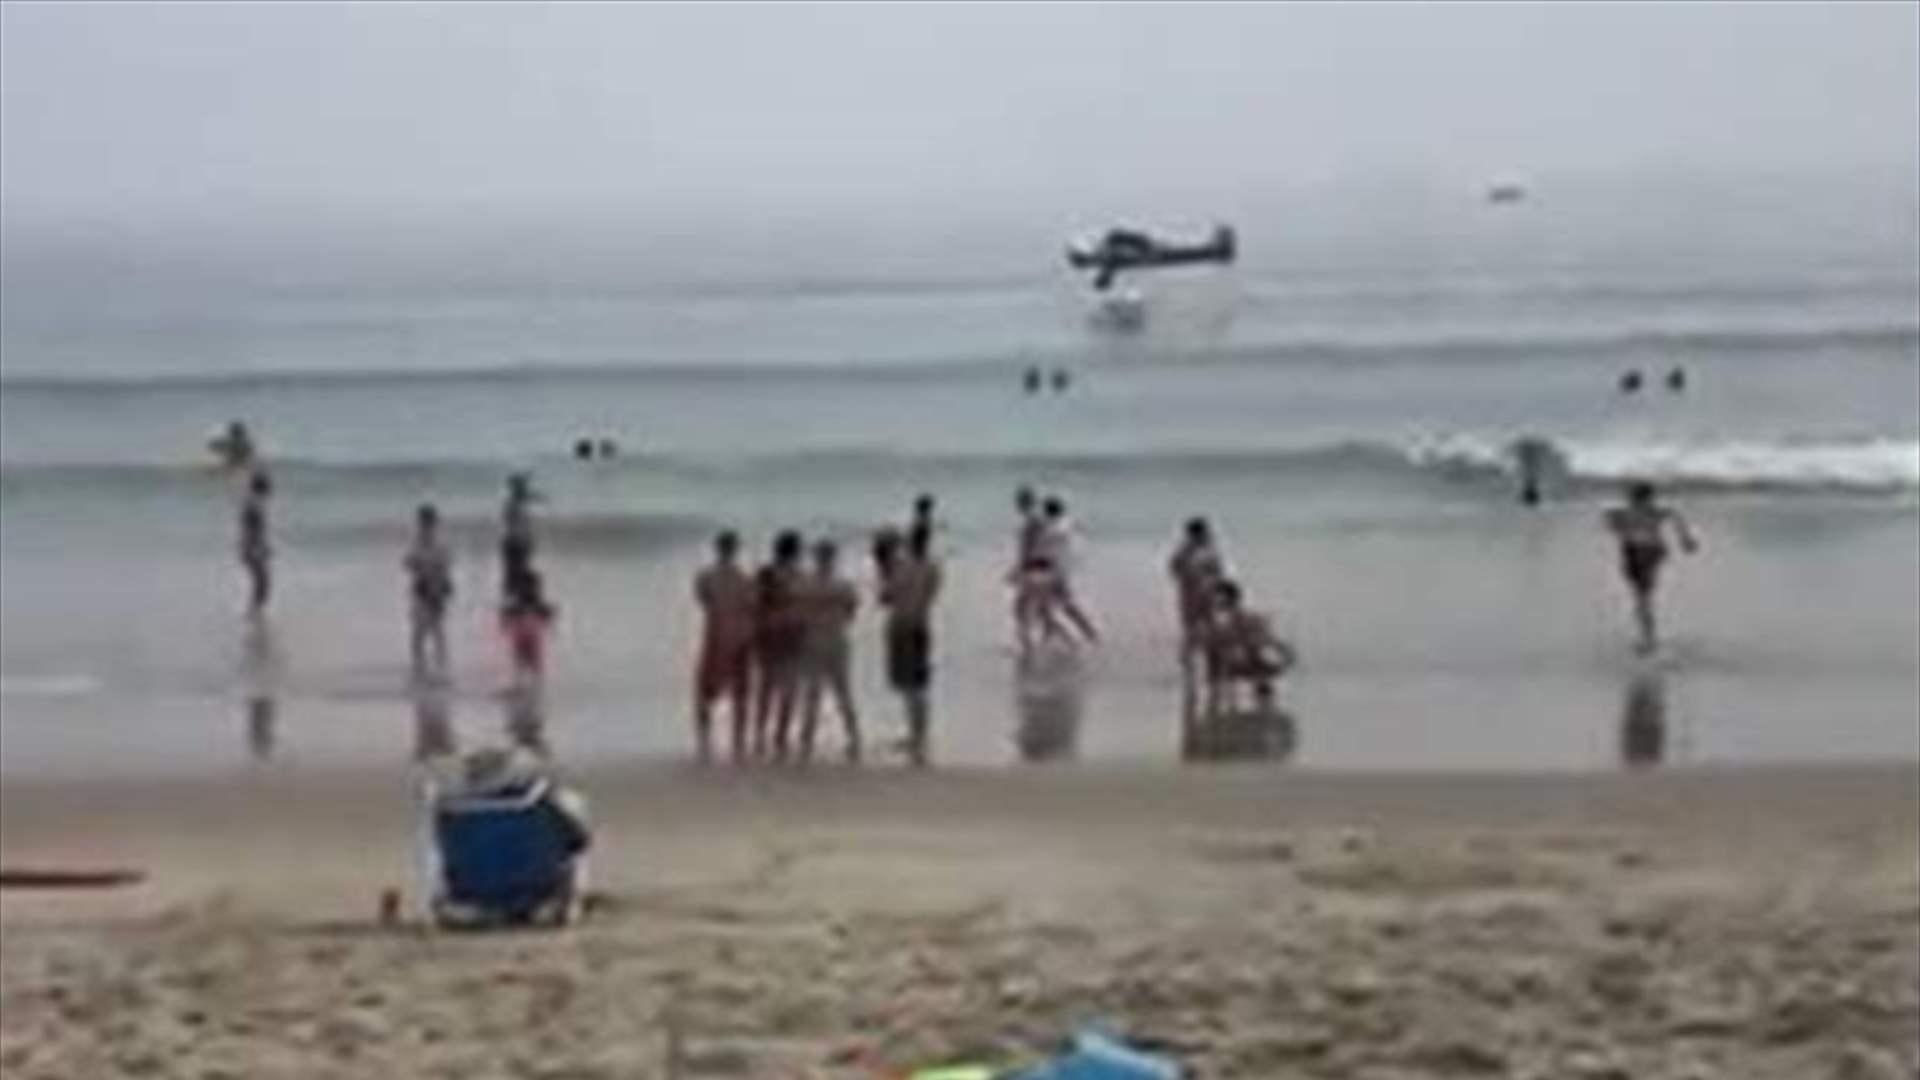 فيديو يوّثق لحظة تحطم طائرة على شاطئ مزدحم في أميركا 